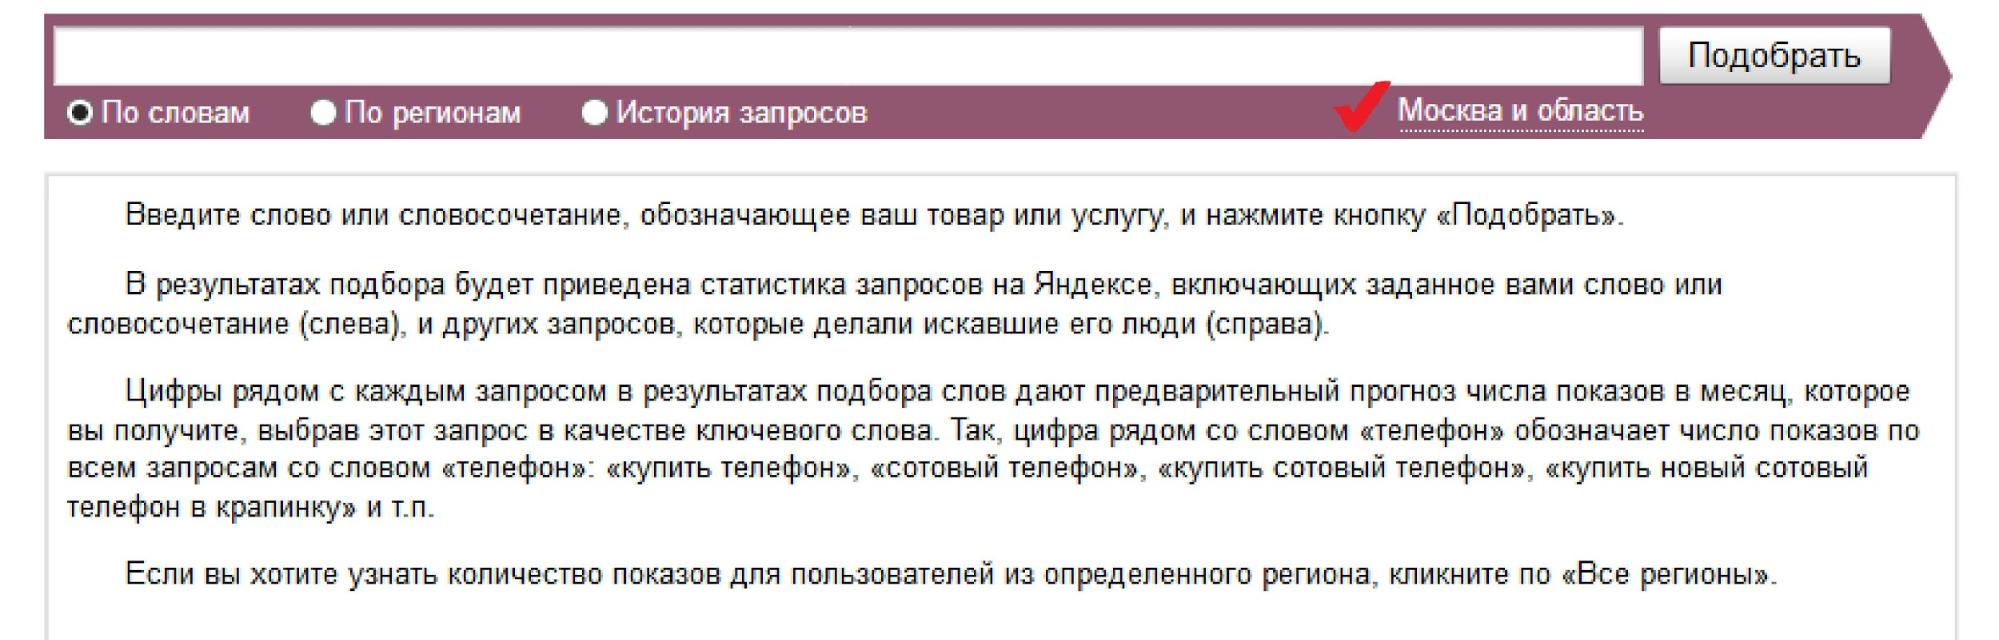 Для інтернет-магазину, який працює тільки по Москві і області, запити покупців в інших областях не цікаві